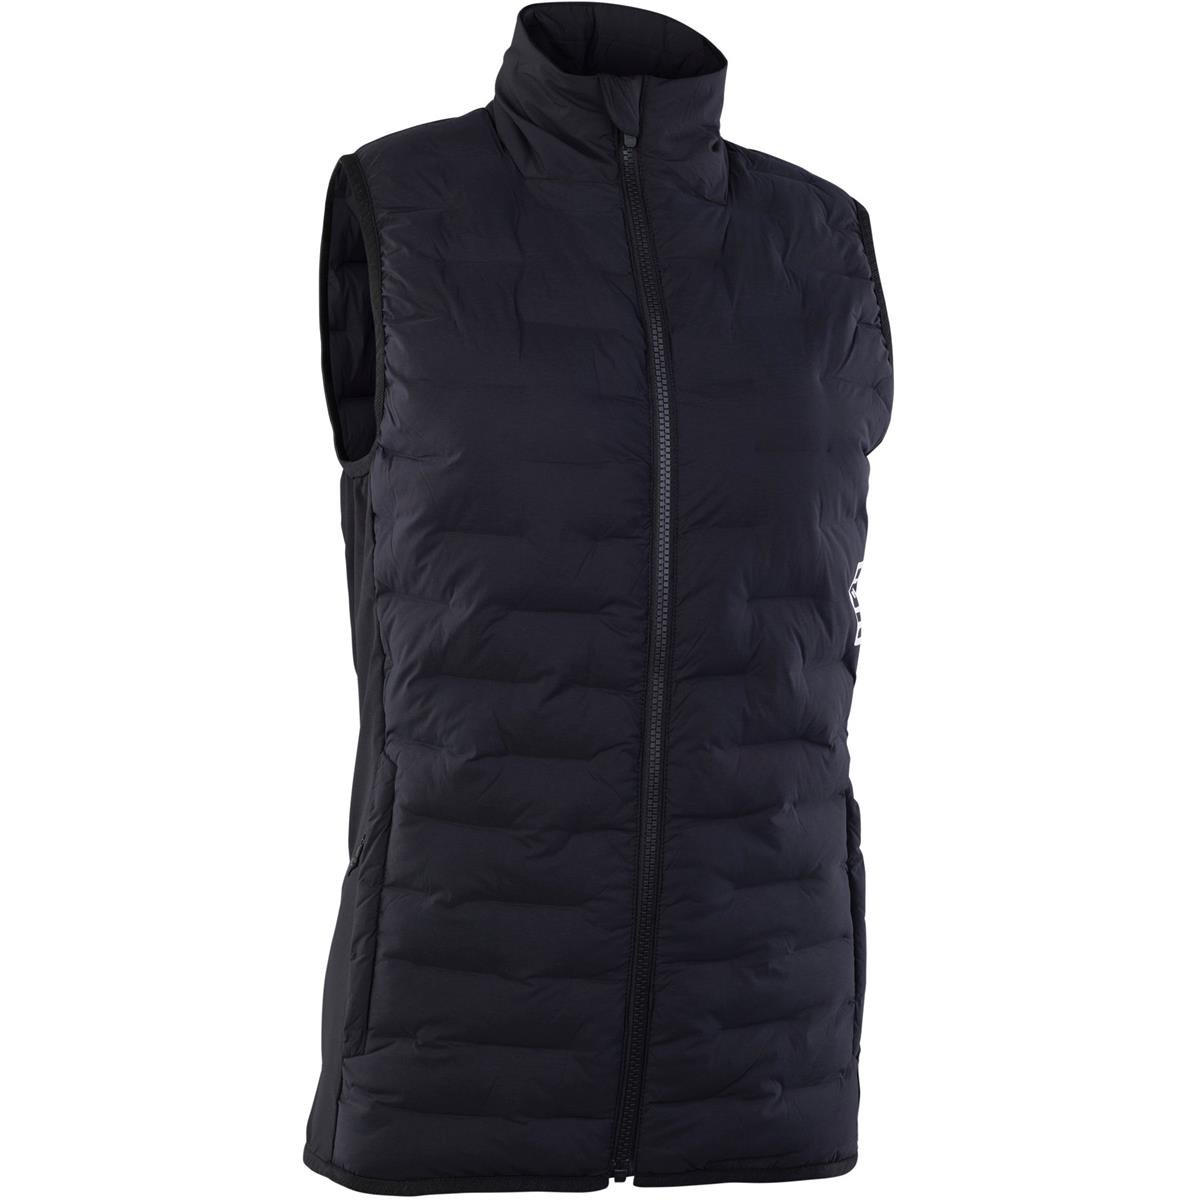 ION Girls MTB Vest Thermolite Hybrid Shelter Black